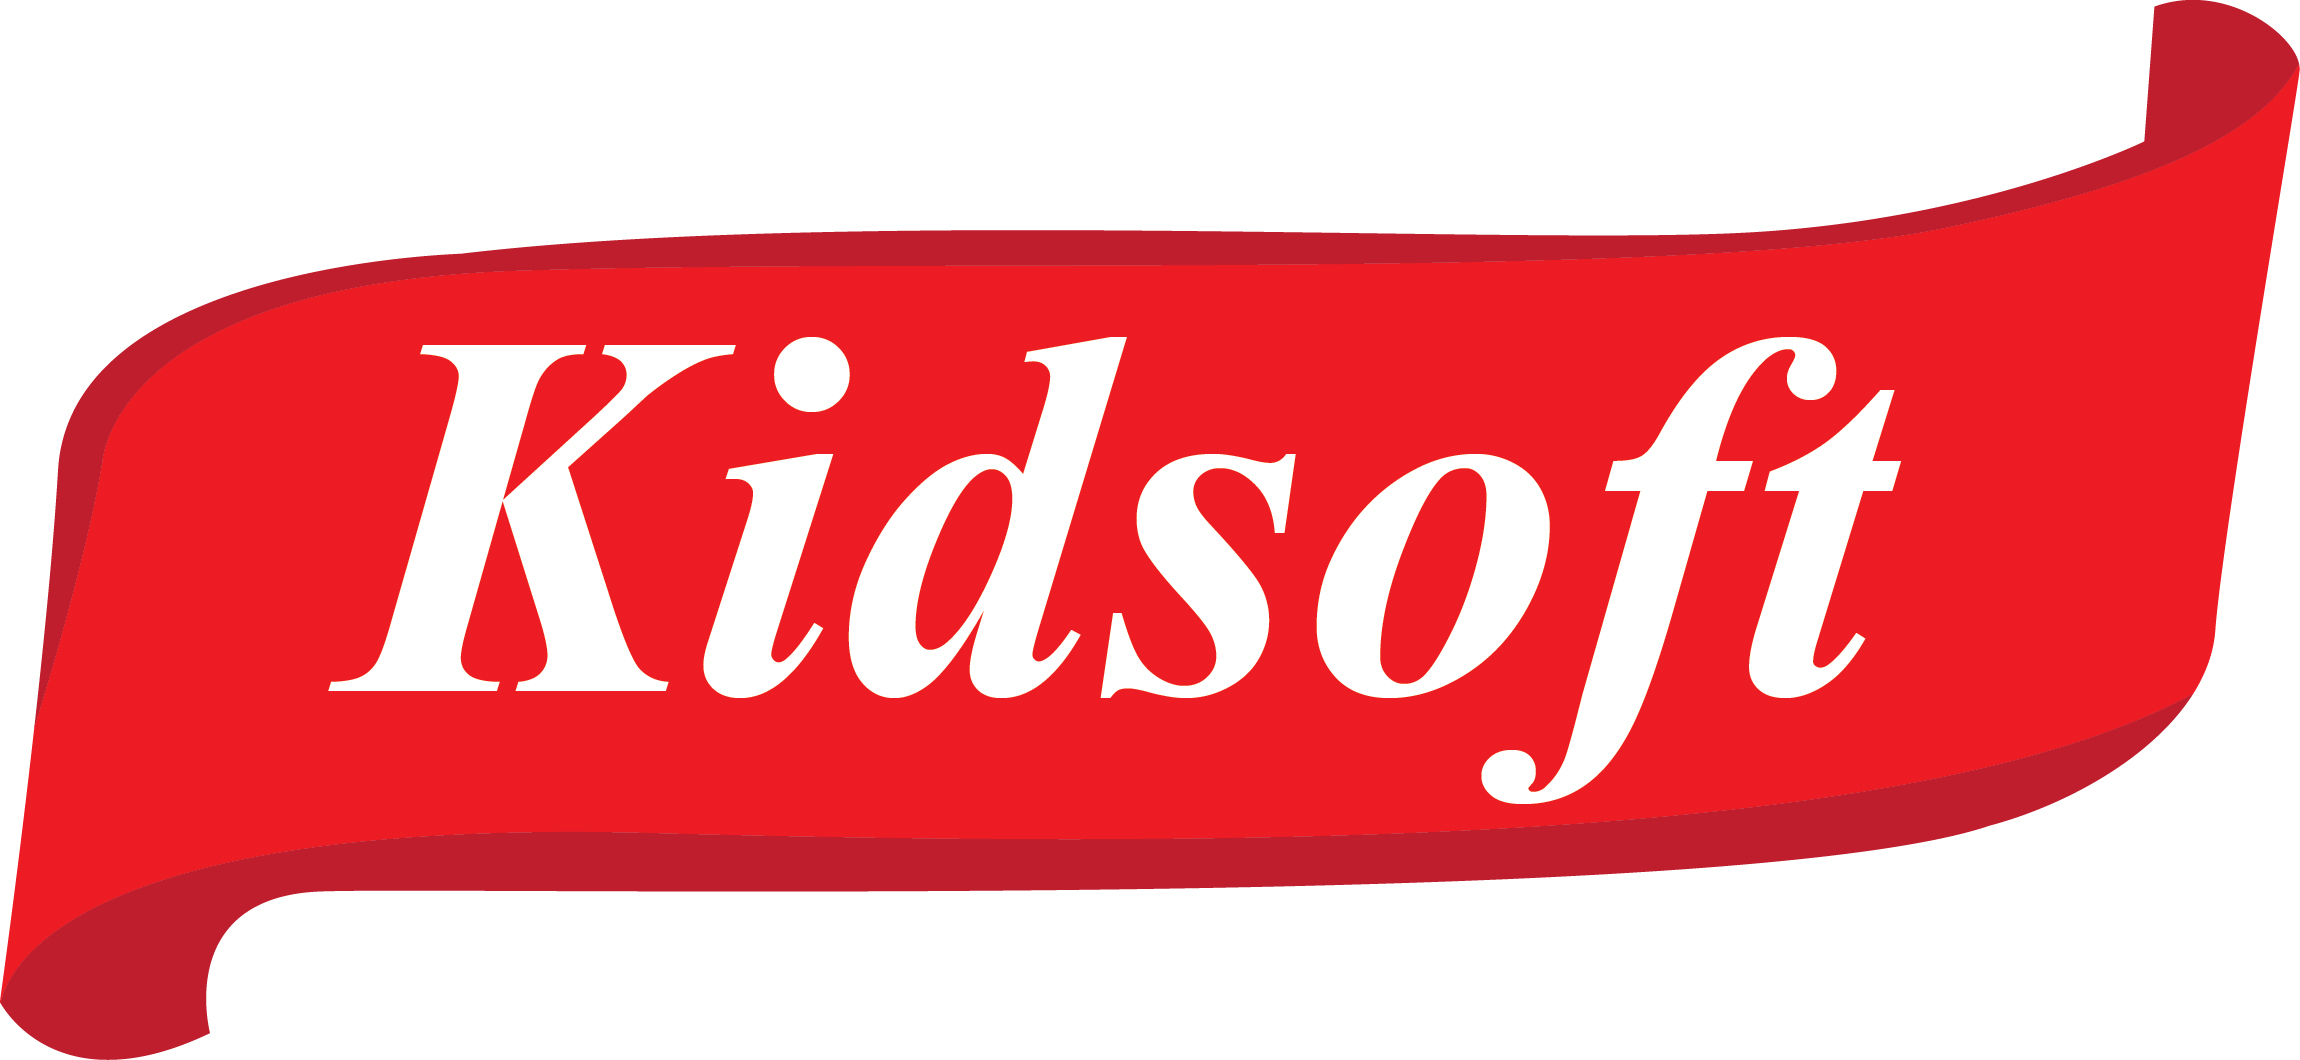 Kidsoft phần mềm quản lý dinh dưỡng mầm non chuyên nghiệp nhất